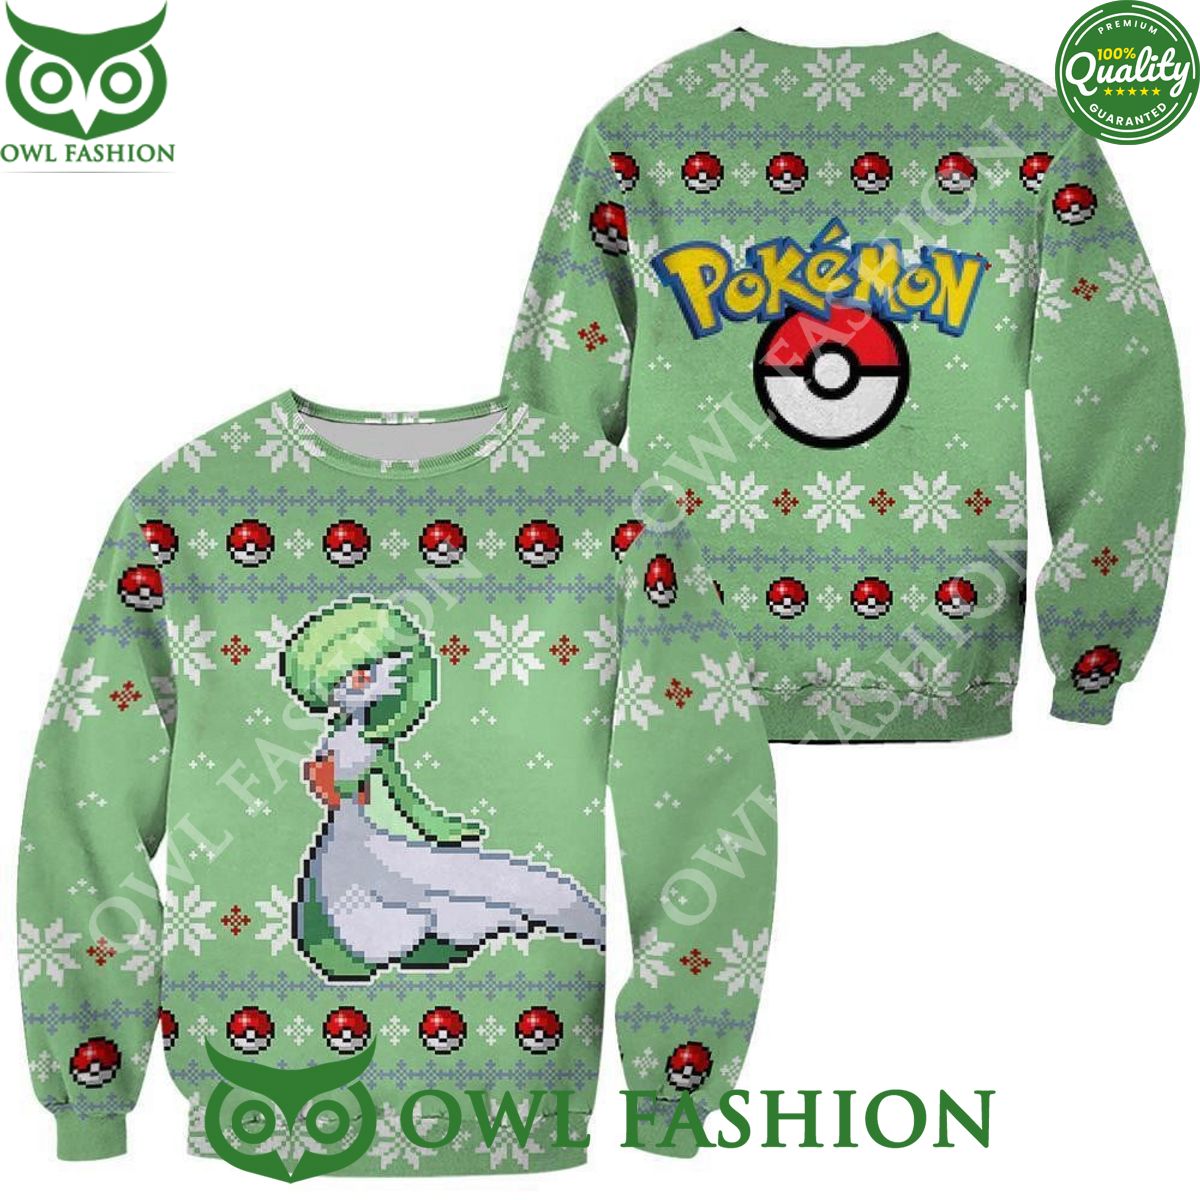 gardevoir pokemon ugly christmas sweater jumper xmas gift 1 607wp.jpg